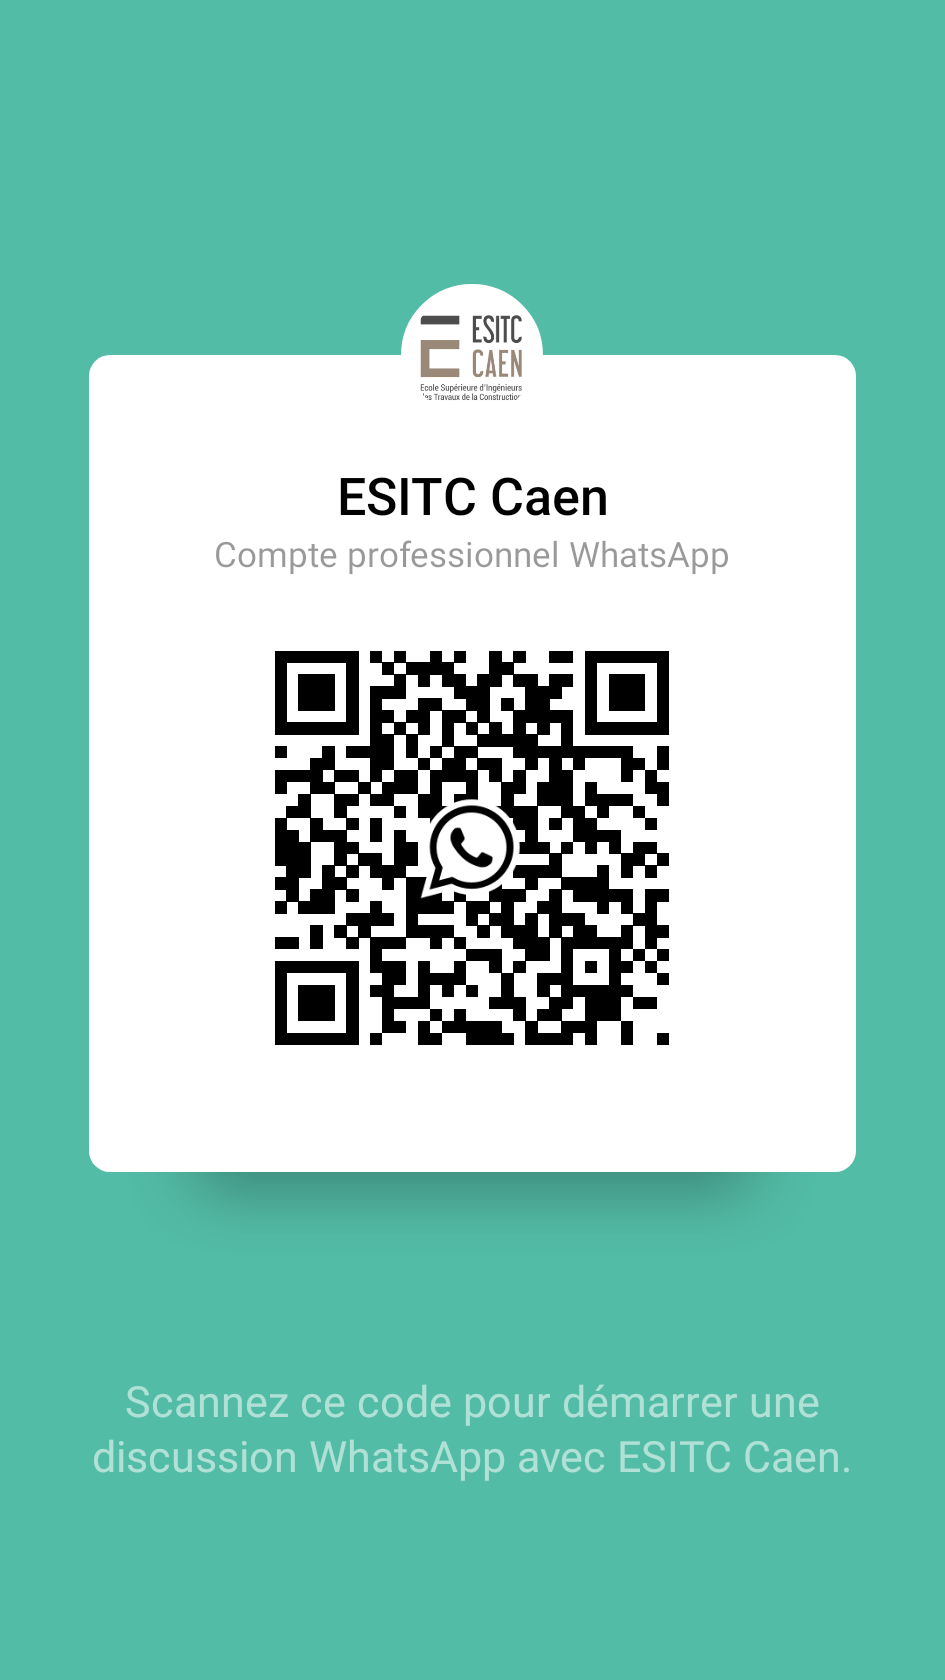 ESITC Caen - QR Code WhatsApp